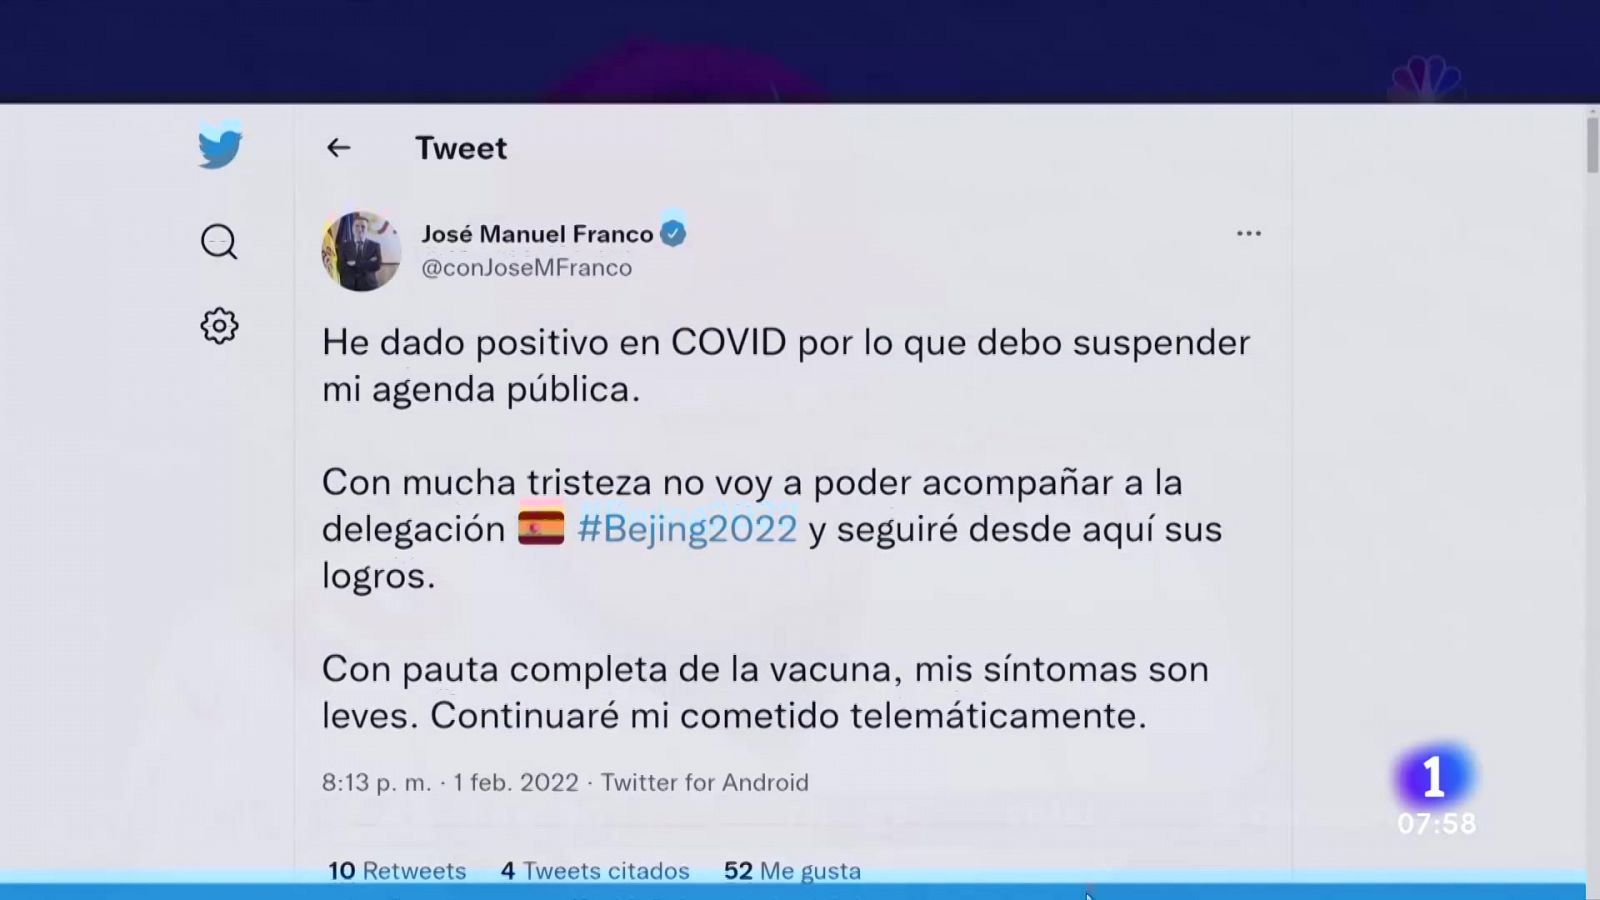 José Manuel Franco da positivo en coronavirus y no podrá viajar a Pekín 2022    